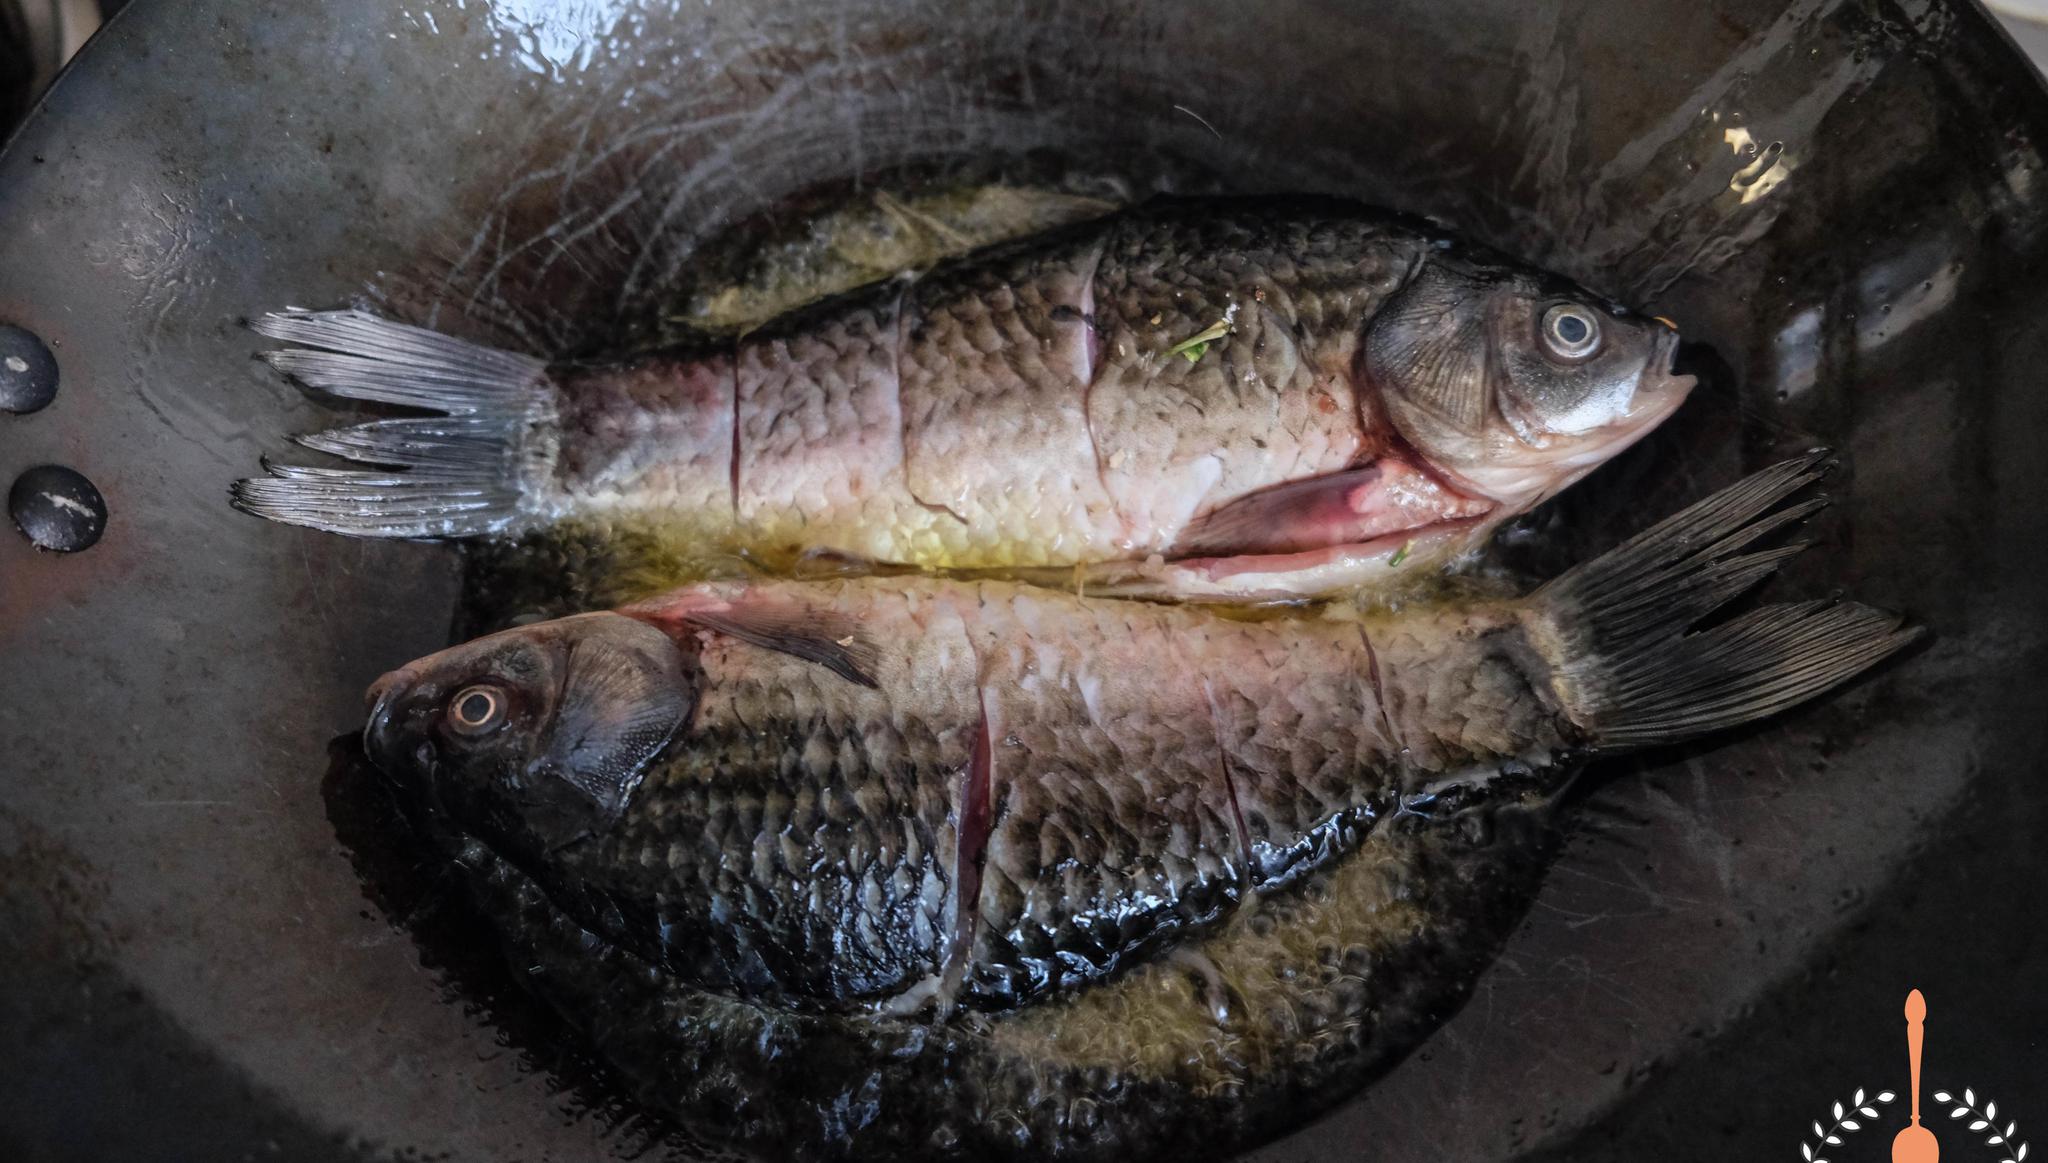 鱼身上有红斑求助 - 水族世界 - 广州观赏鱼批发市场